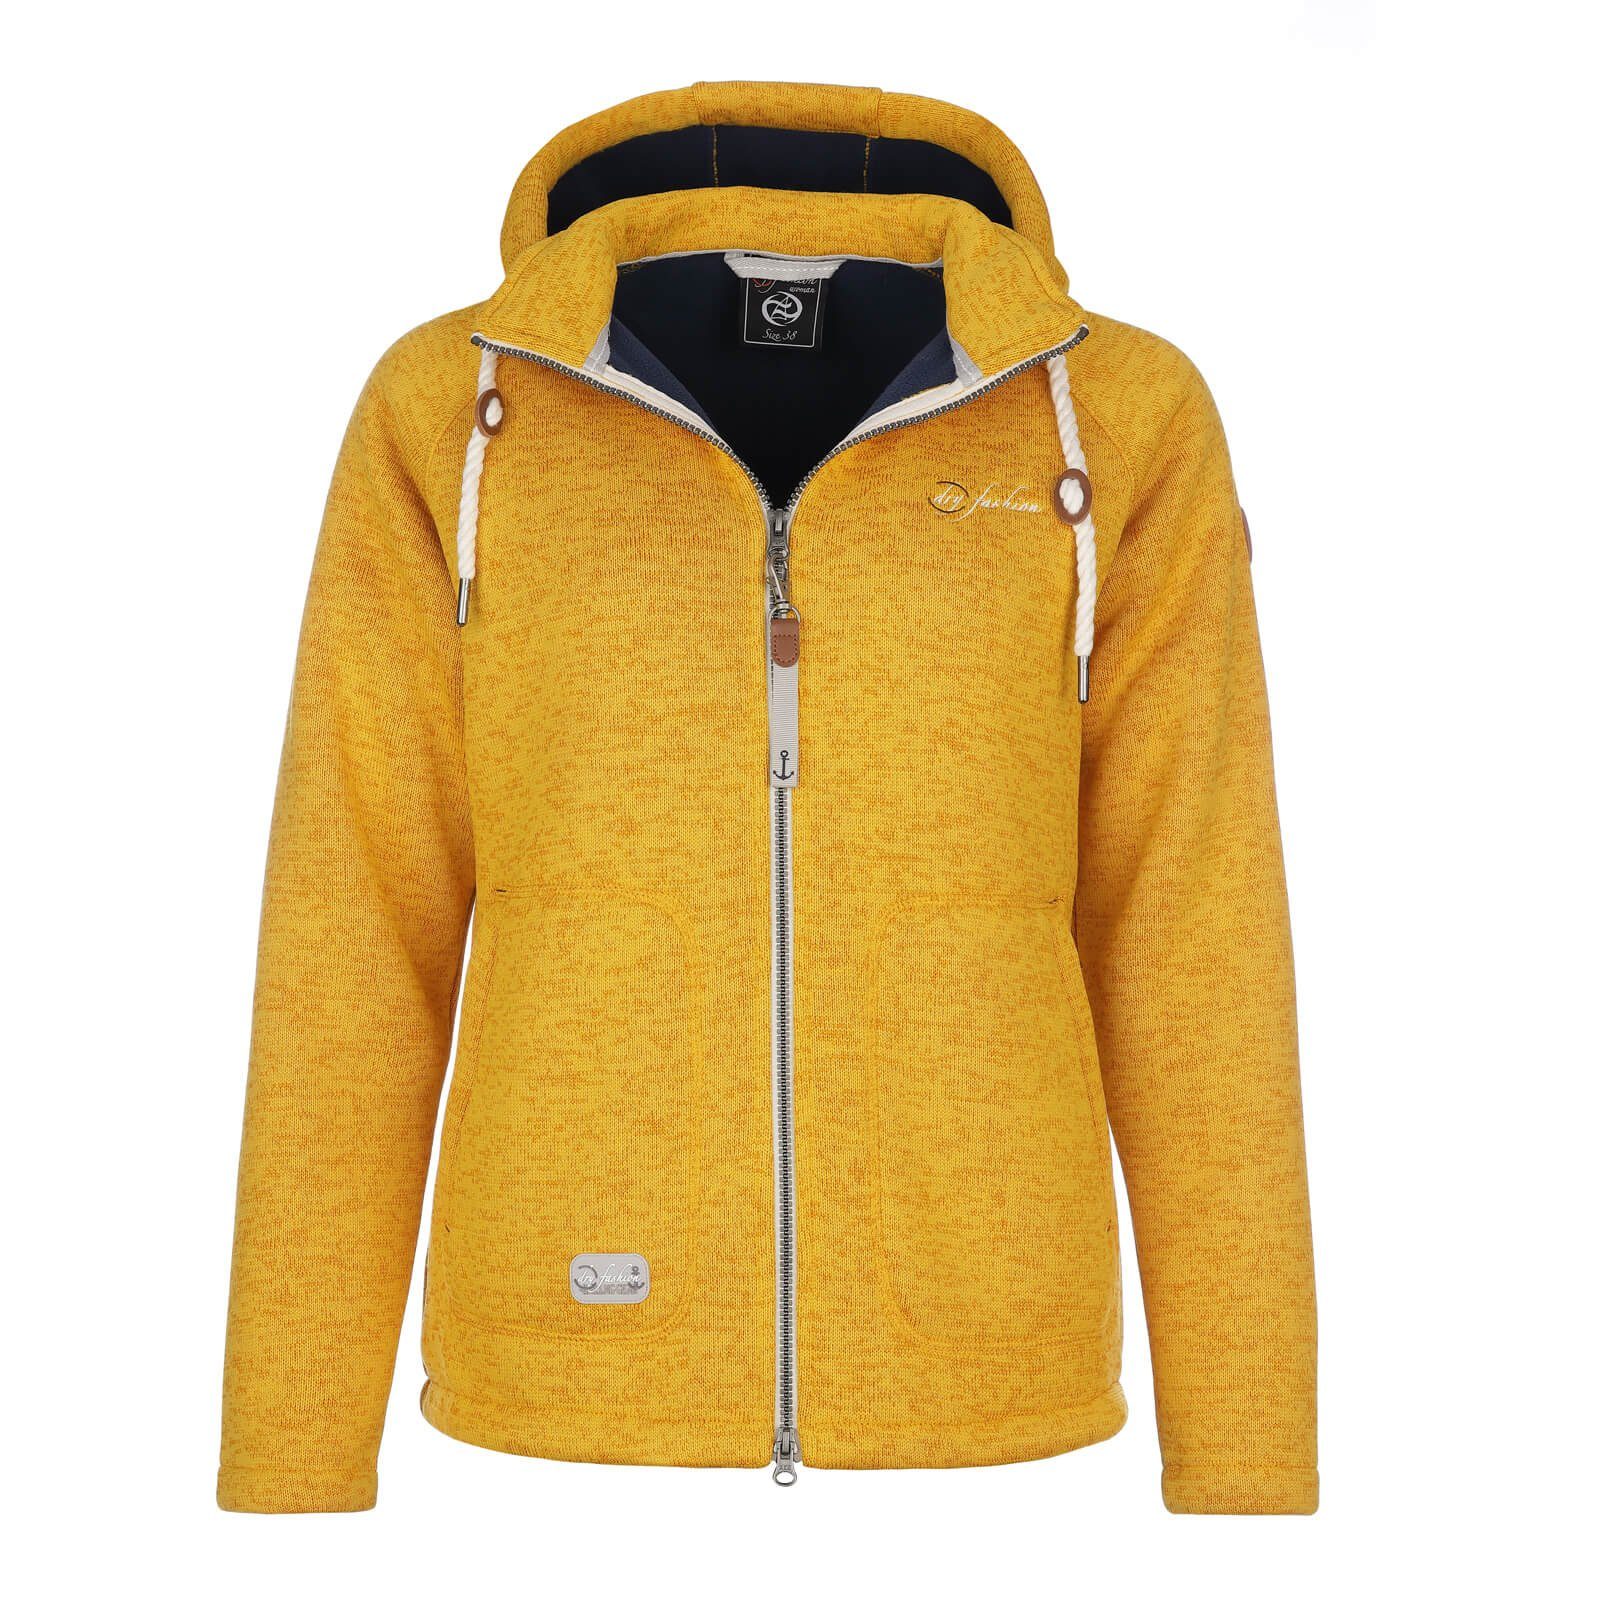 Dry Fashion Fleecejacke Damen Fleece-Jacke Strickjacke Föhr mit Kapuze und Reißverschluss gelb